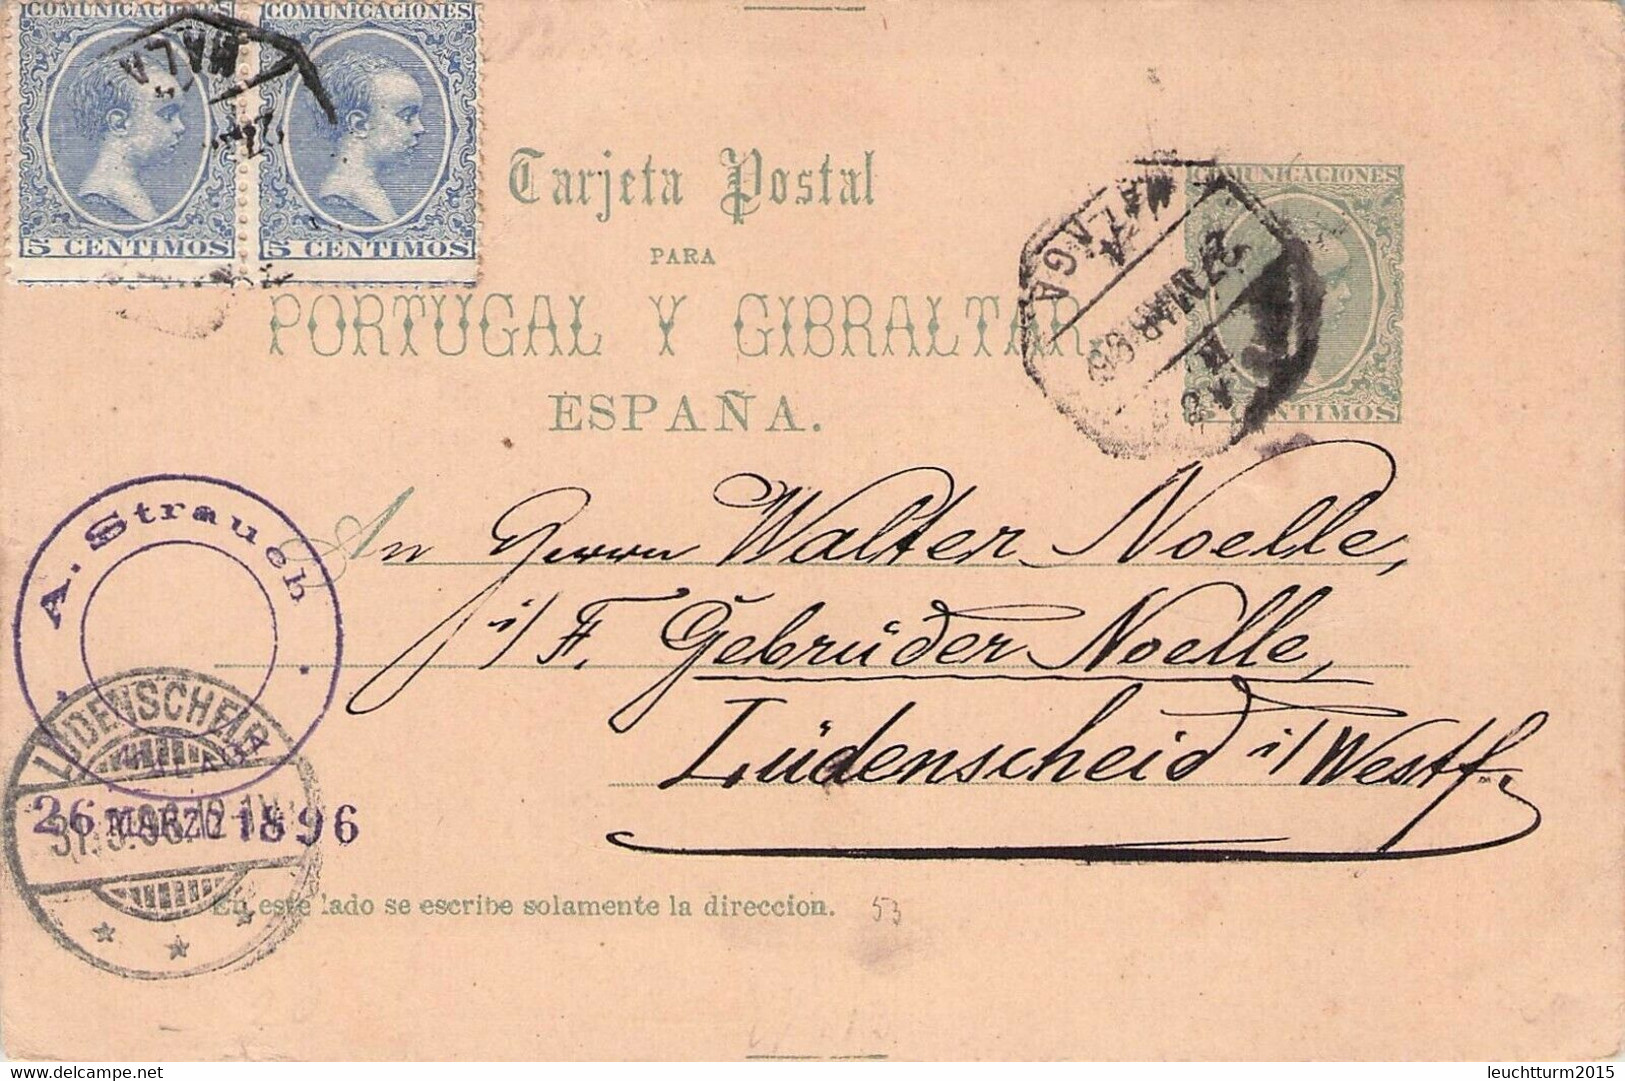 SPAIN - TARJETA POSTAL 1896 > GERMANY 5 CENTIMOS UPRATED /GR29 - 1850-1931